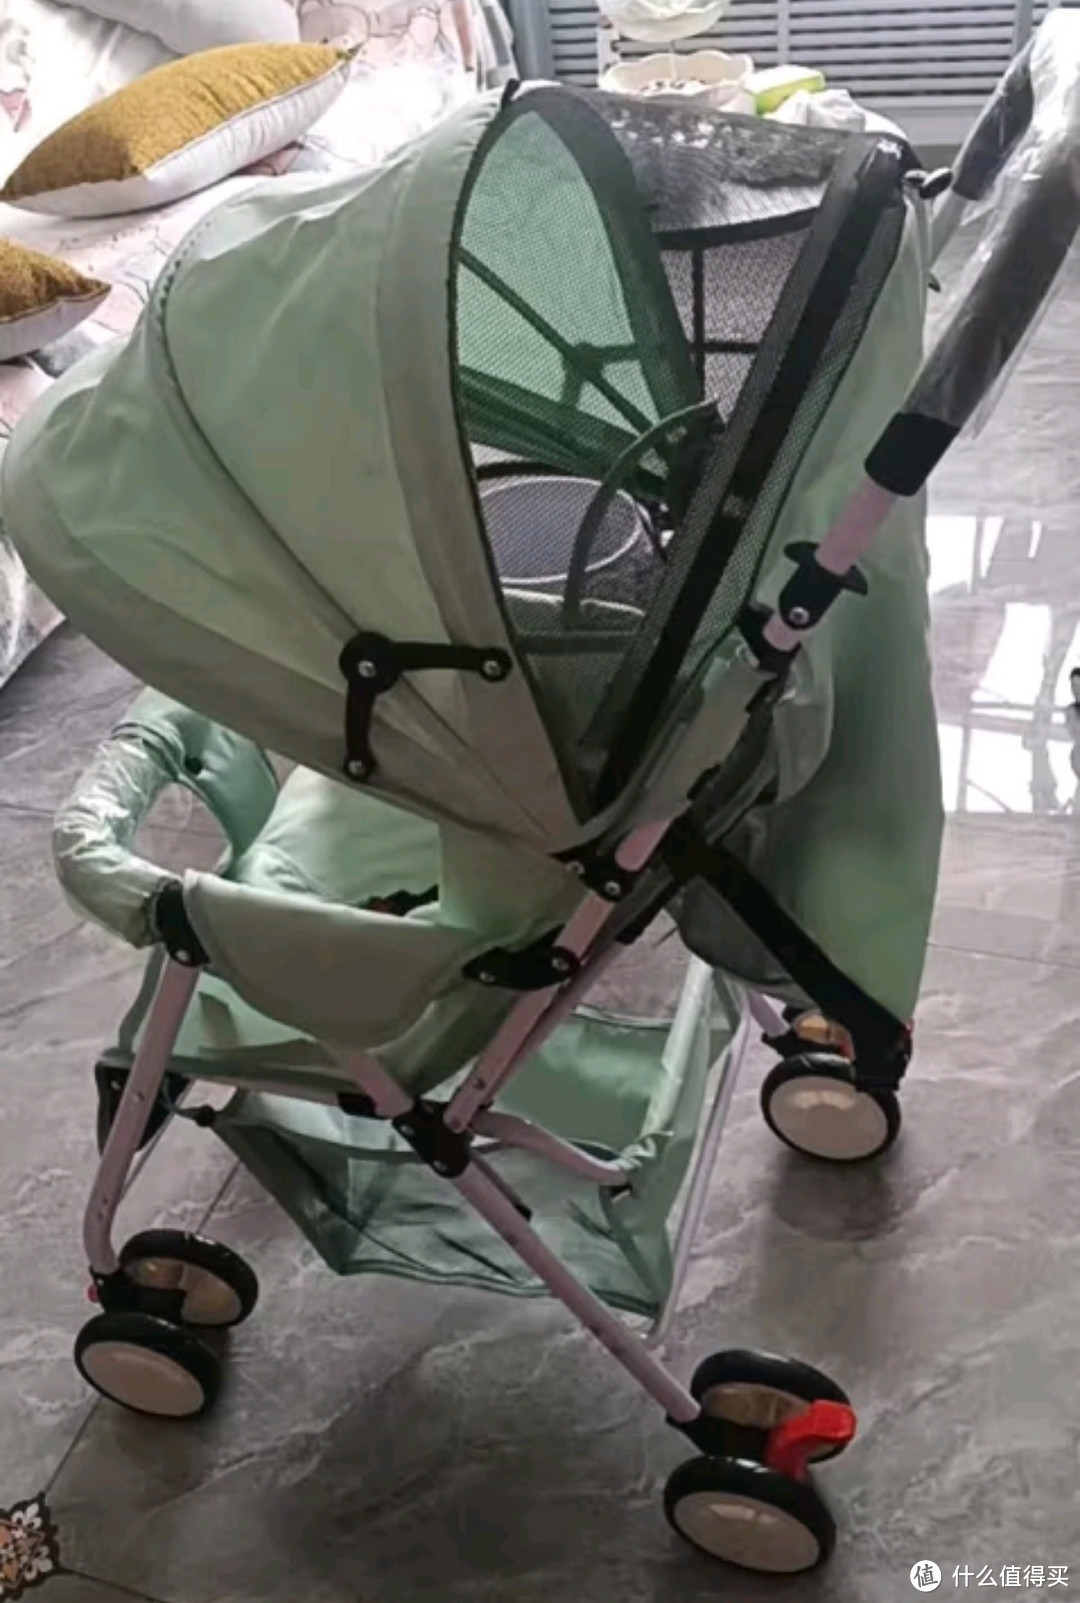 豪威 婴儿推车可坐可躺双向超轻便折叠伞车宝宝0-3岁手推车小孩儿童车 麻卡其+至尊款+一键折叠+全功能